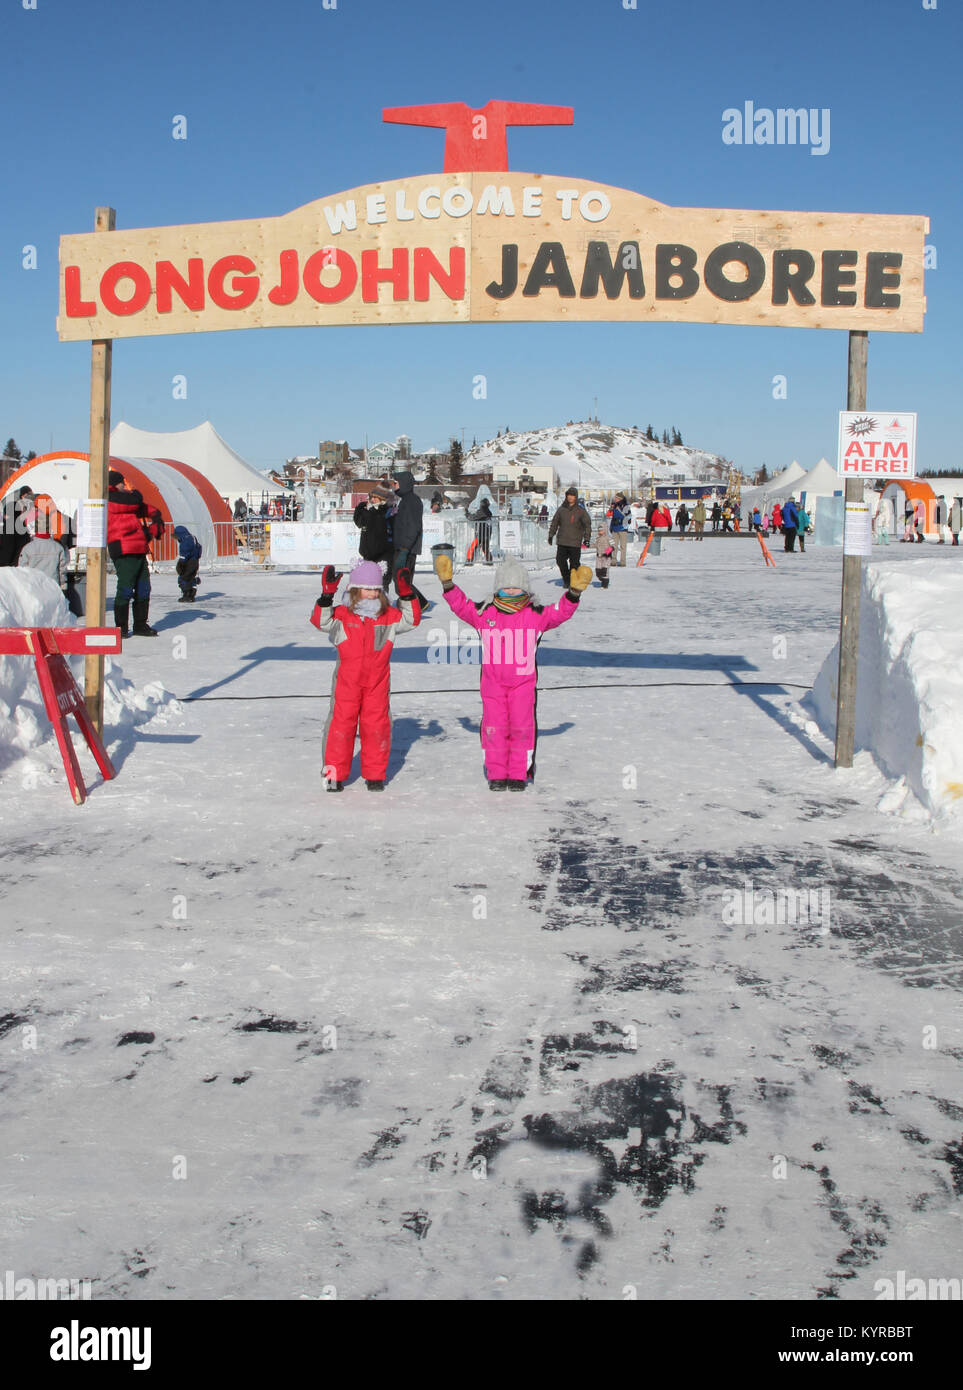 Les enfants debout sur le Grand lac des Esclaves à l'annual Long John Winter Festival Jamboree à Yellowknife, Territoires du Nord-Ouest, Canada. Banque D'Images